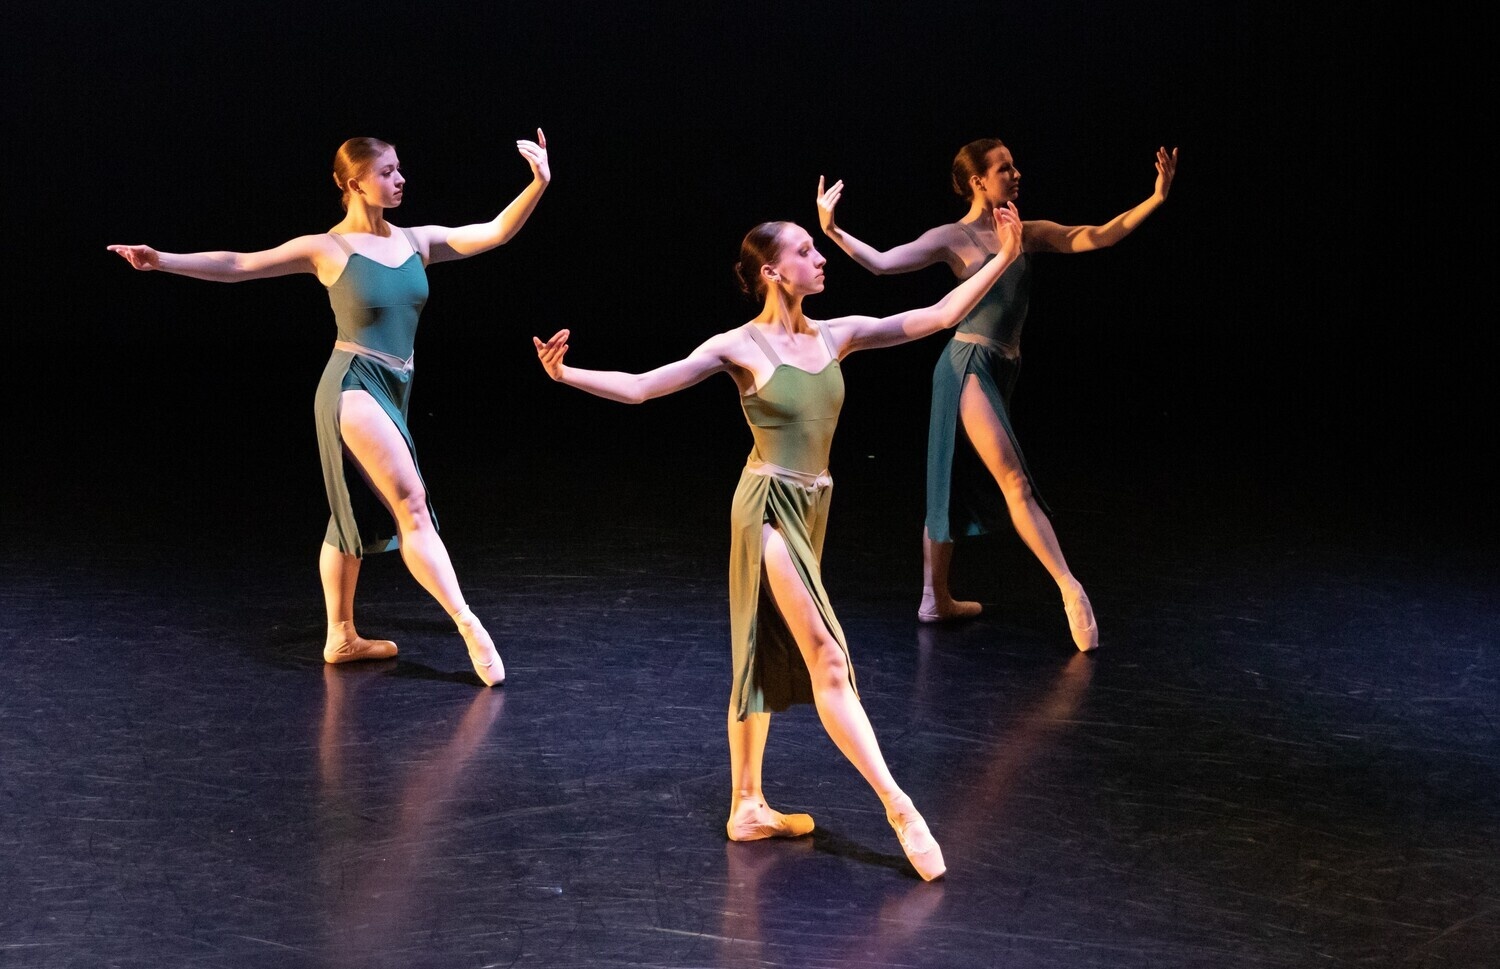 Image of three dancers n stage. 